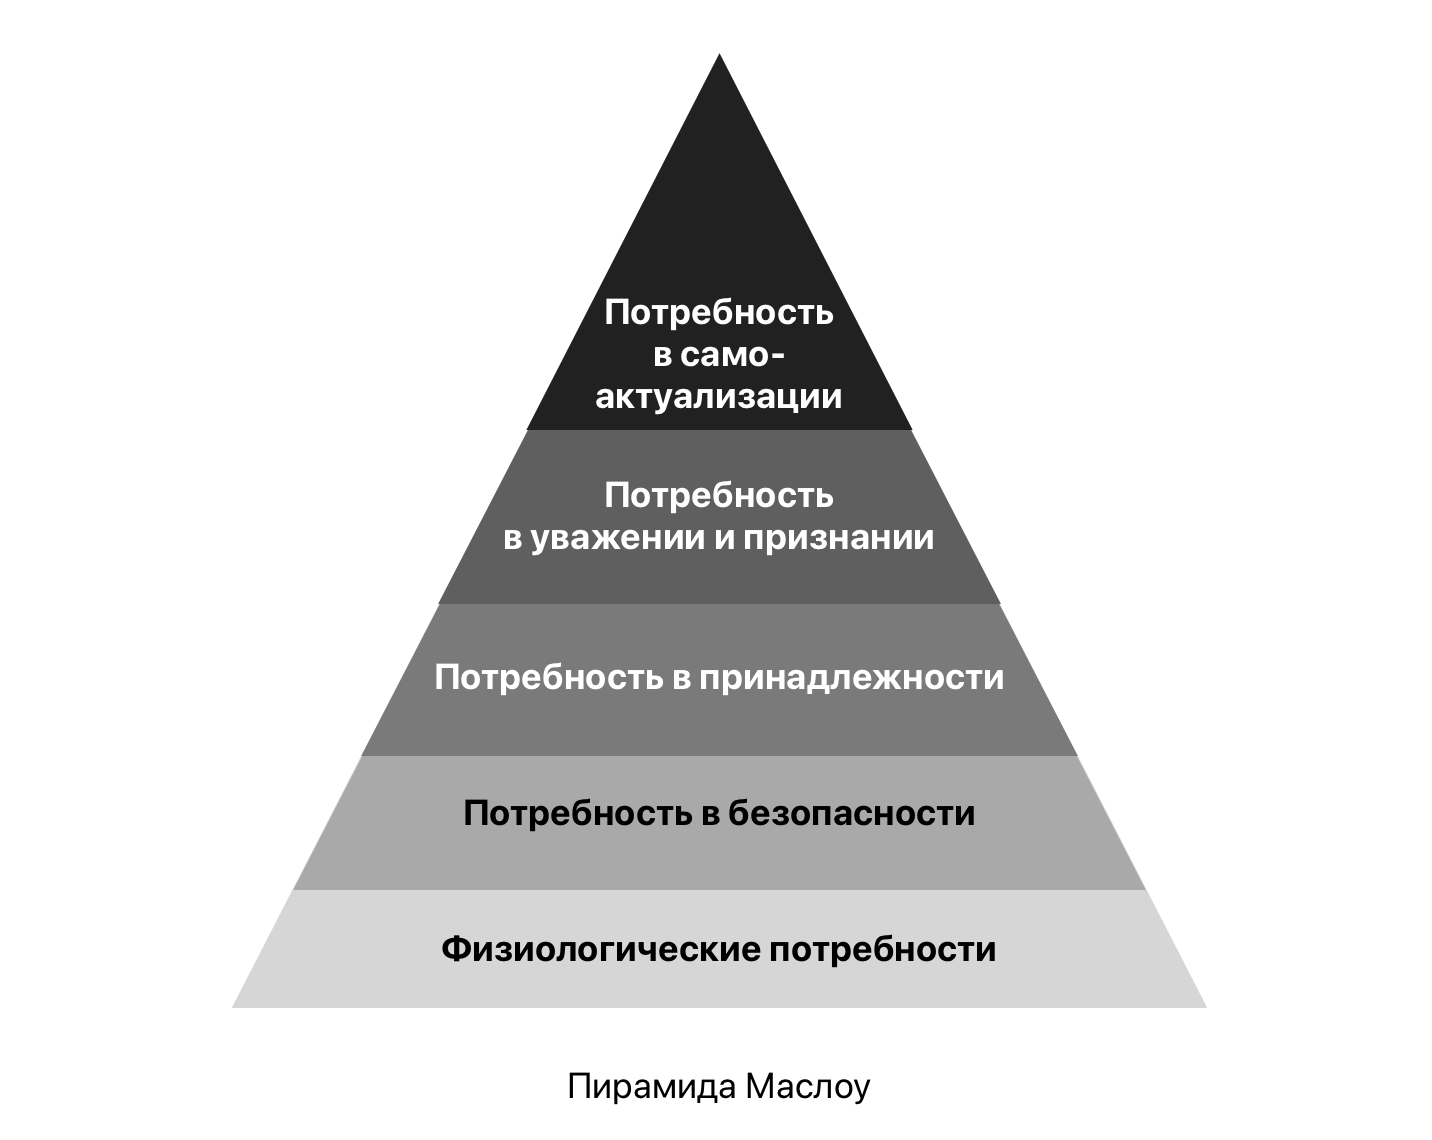 Пирамида Маслоу подробная. Пирамида Маслоу экономика. Схема потребностей по Маслоу. Пирамида Маслоу шаблон. Правило ранжирования потребностей семьи